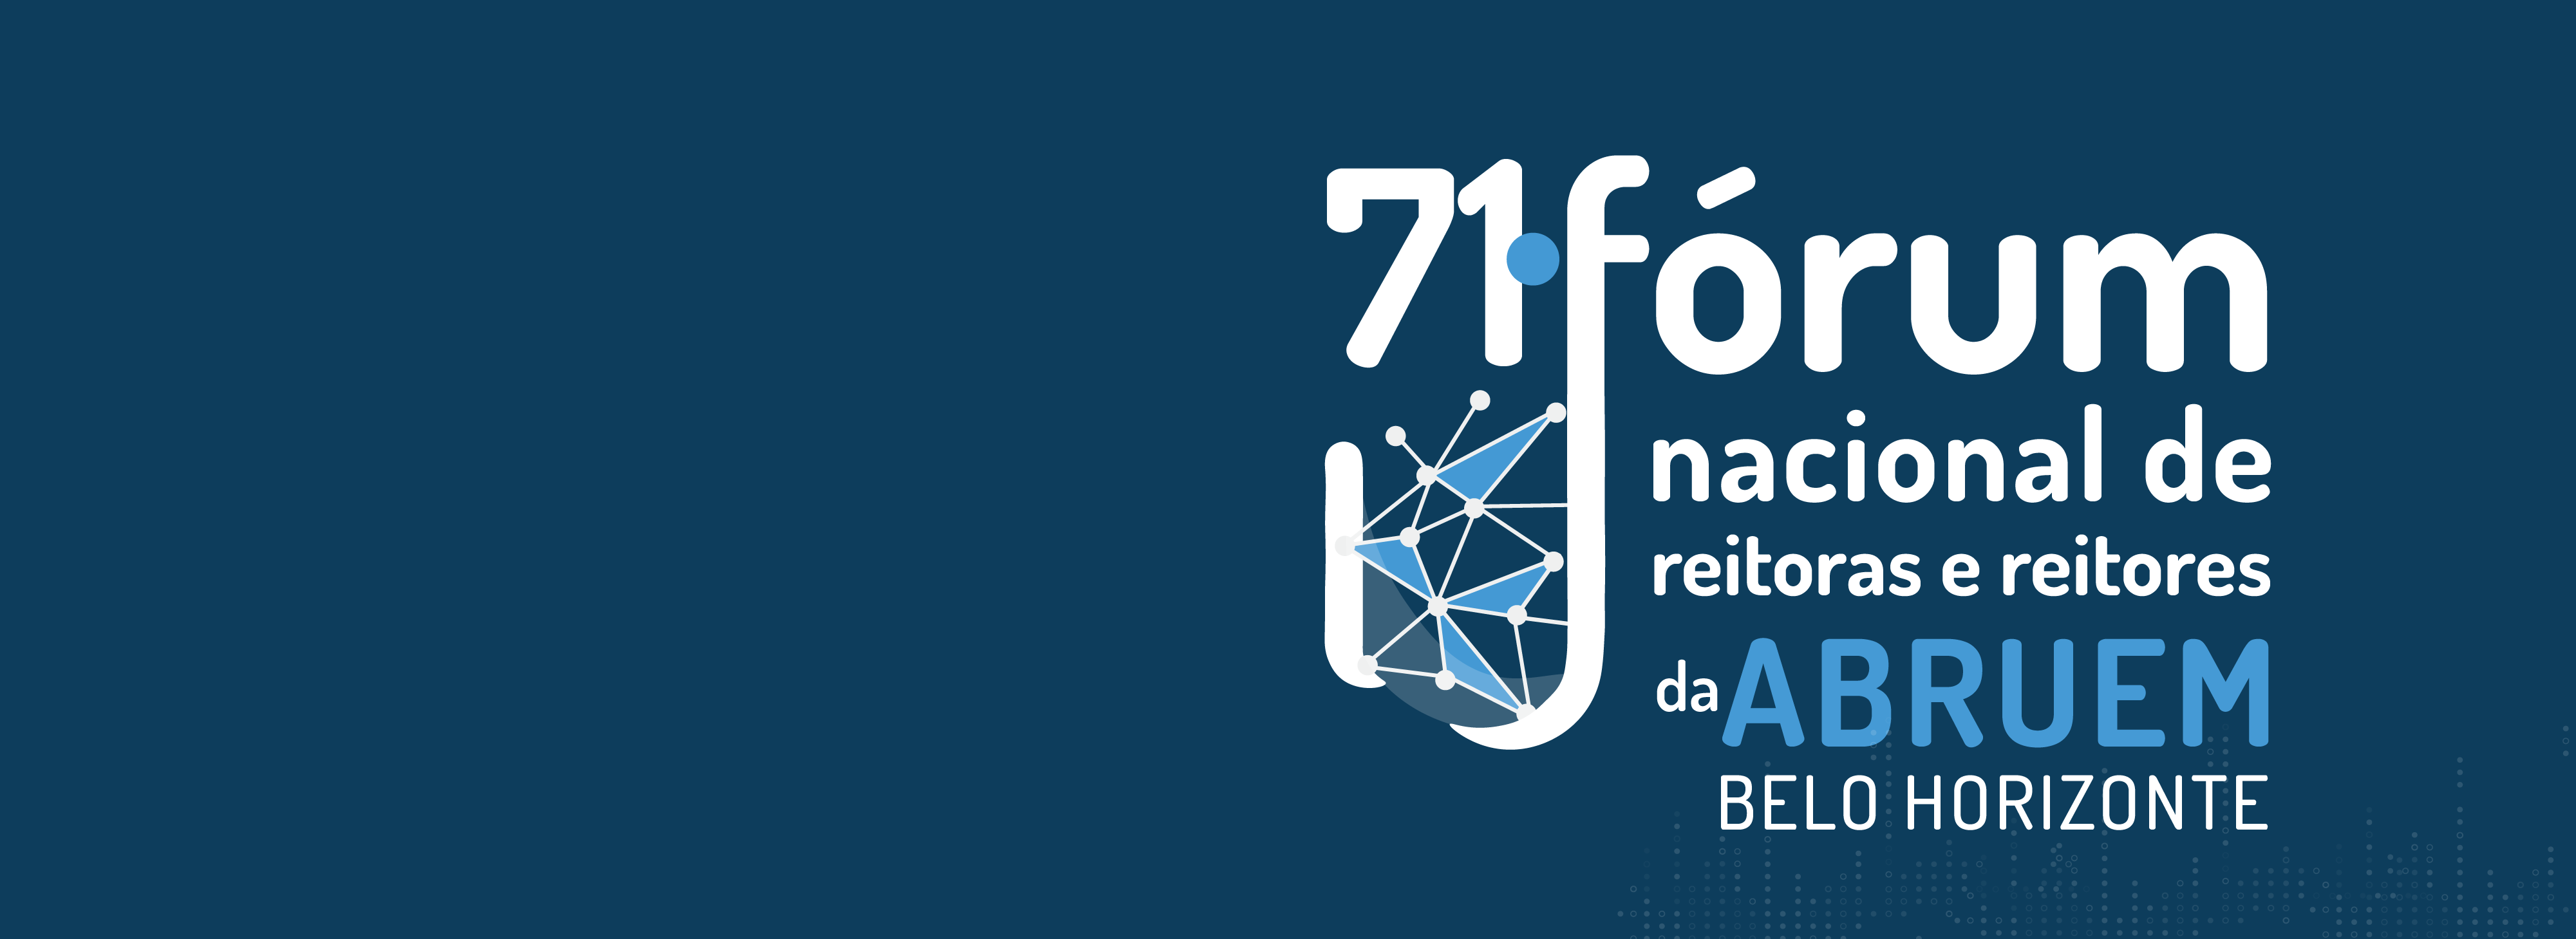 71º Fórum Nacional de Reitoras e Reitores da ABRUEM